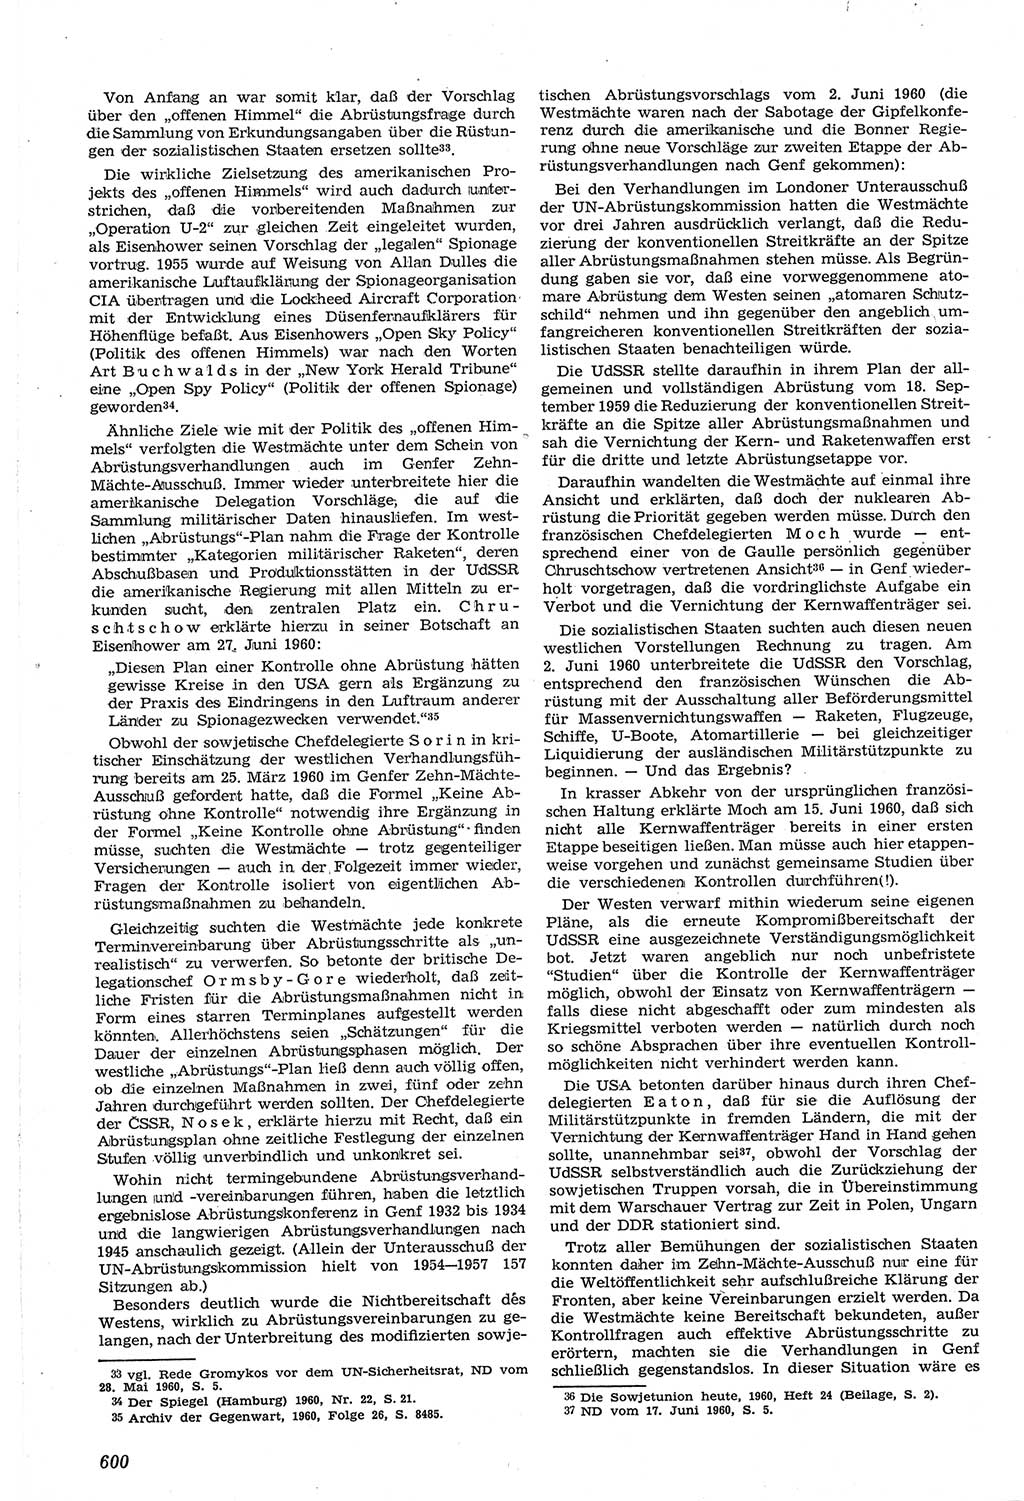 Neue Justiz (NJ), Zeitschrift für Recht und Rechtswissenschaft [Deutsche Demokratische Republik (DDR)], 14. Jahrgang 1960, Seite 600 (NJ DDR 1960, S. 600)